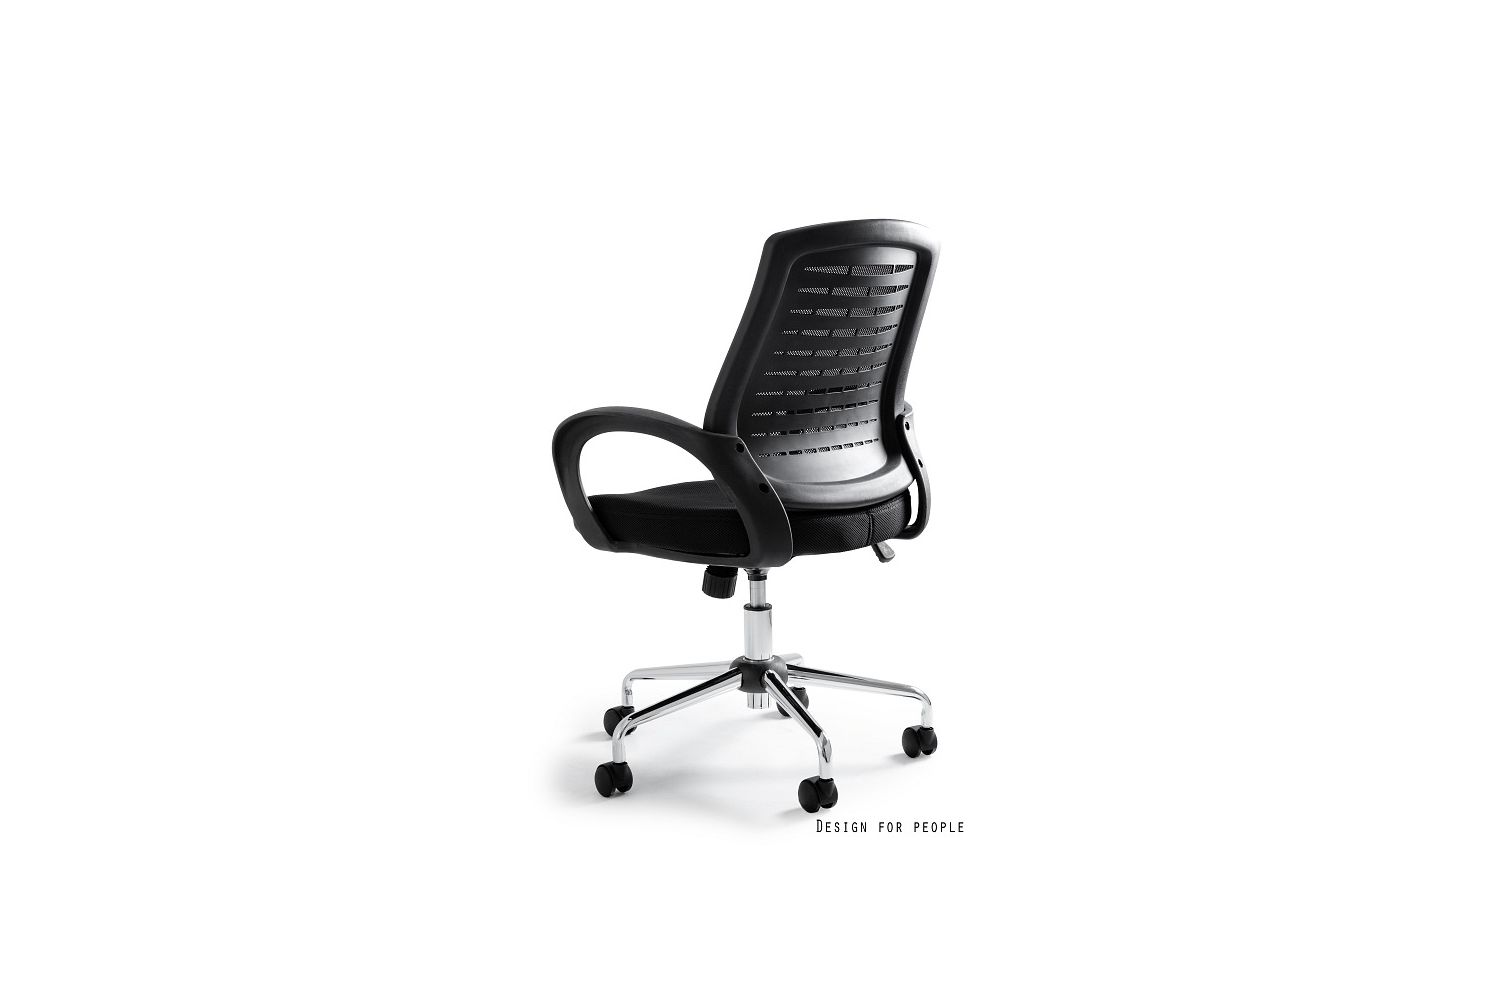 Kancelářská židle Awast - více barev